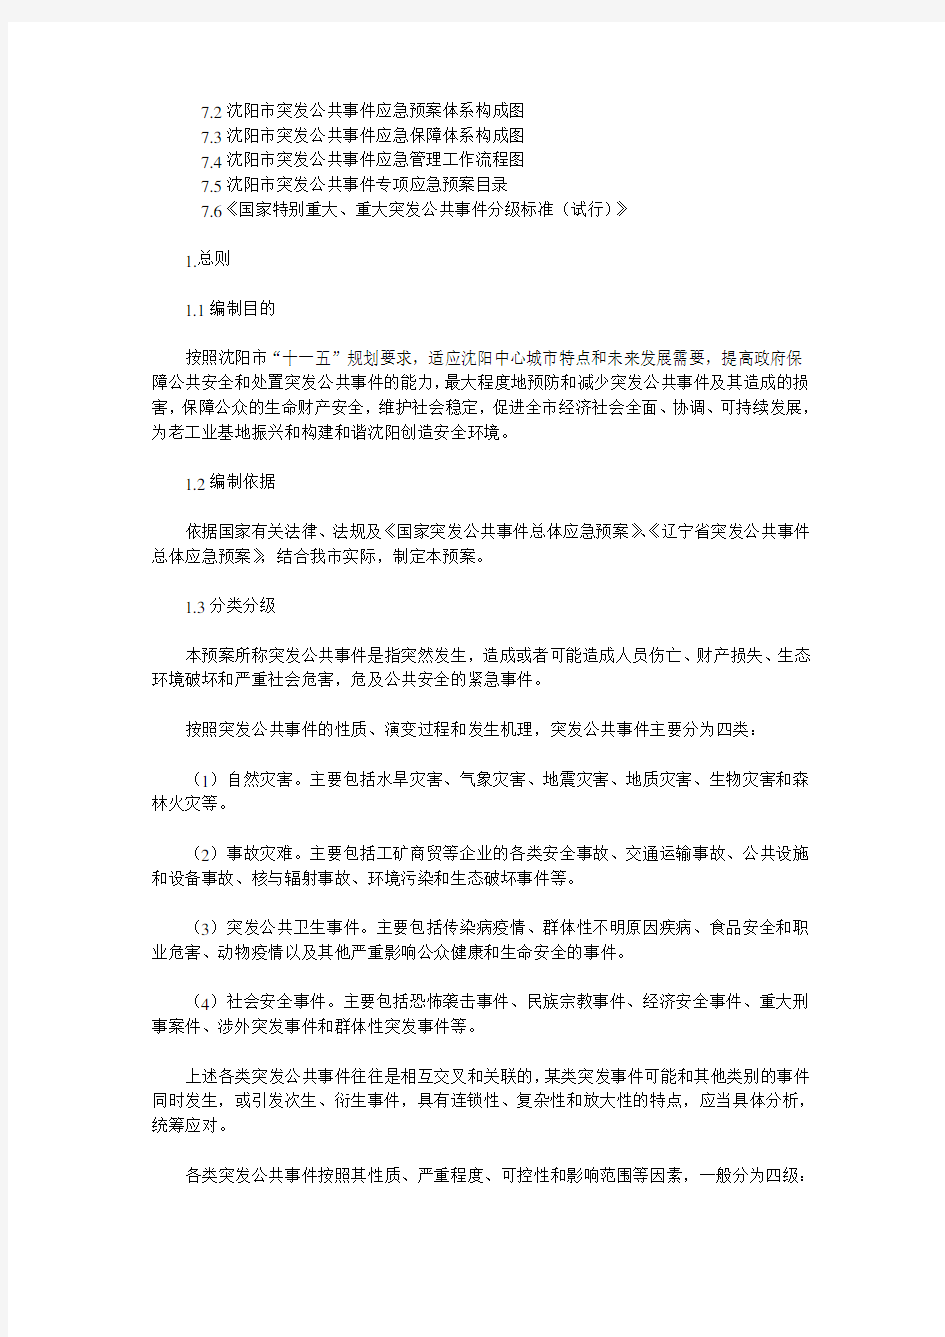 沈阳市人民政府突发公共事件总体应急预案